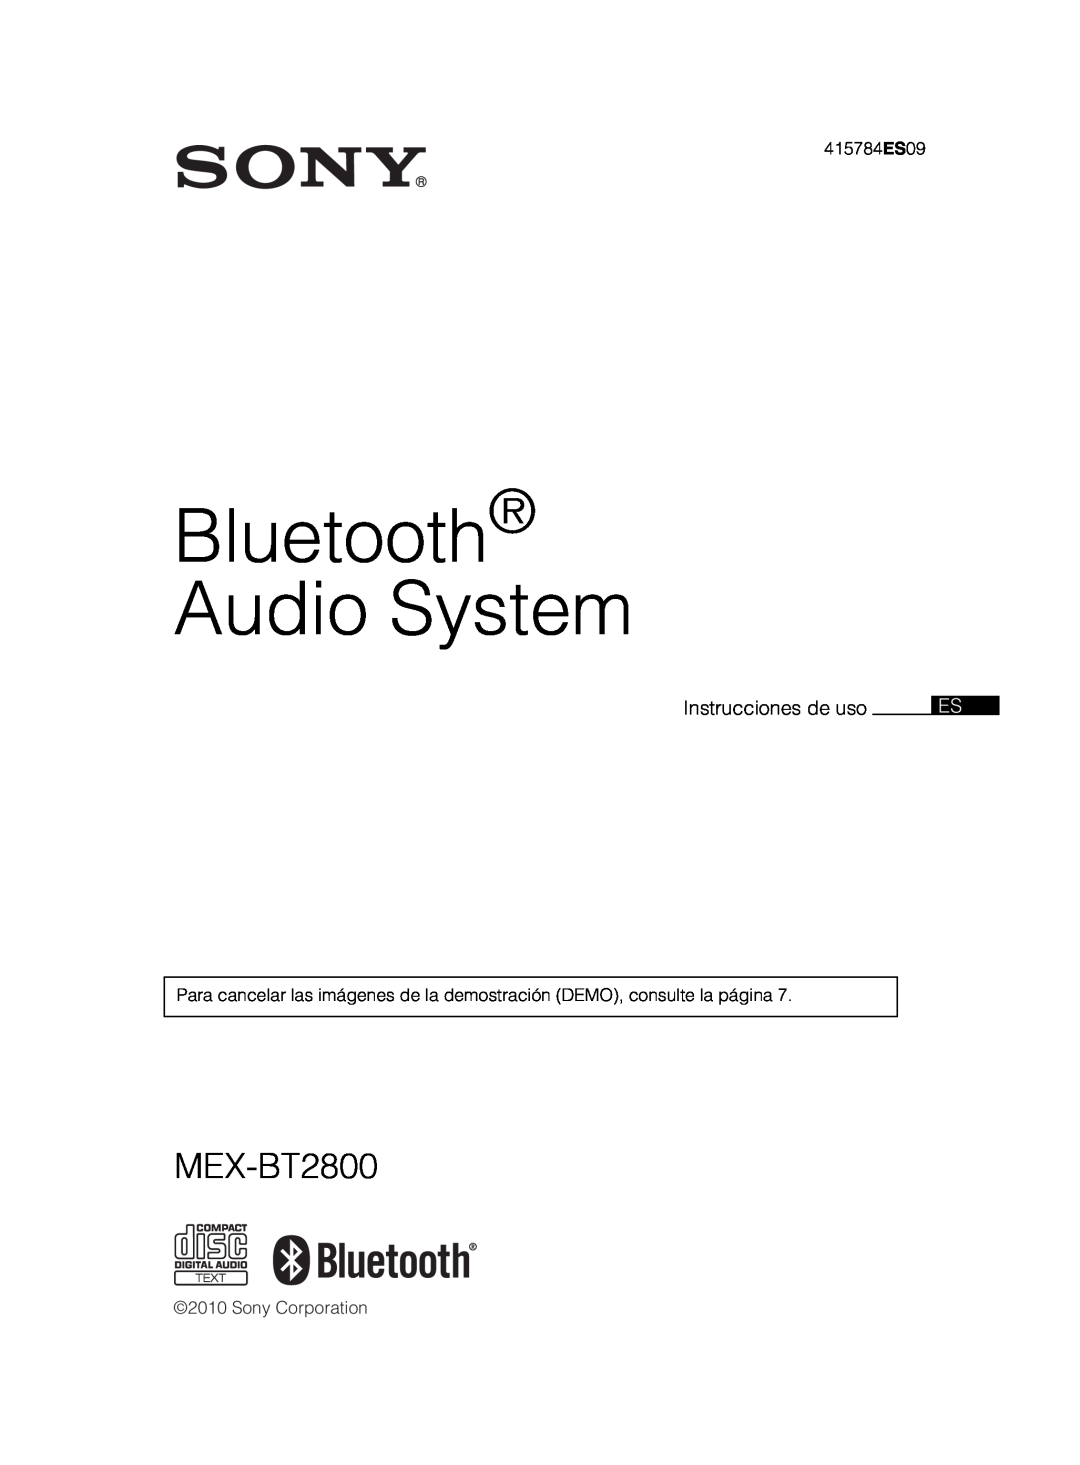 Sony MEX-BT2800 manual Bluetooth Audio System, Instrucciones de uso, 415784ES09, Sony Corporation 